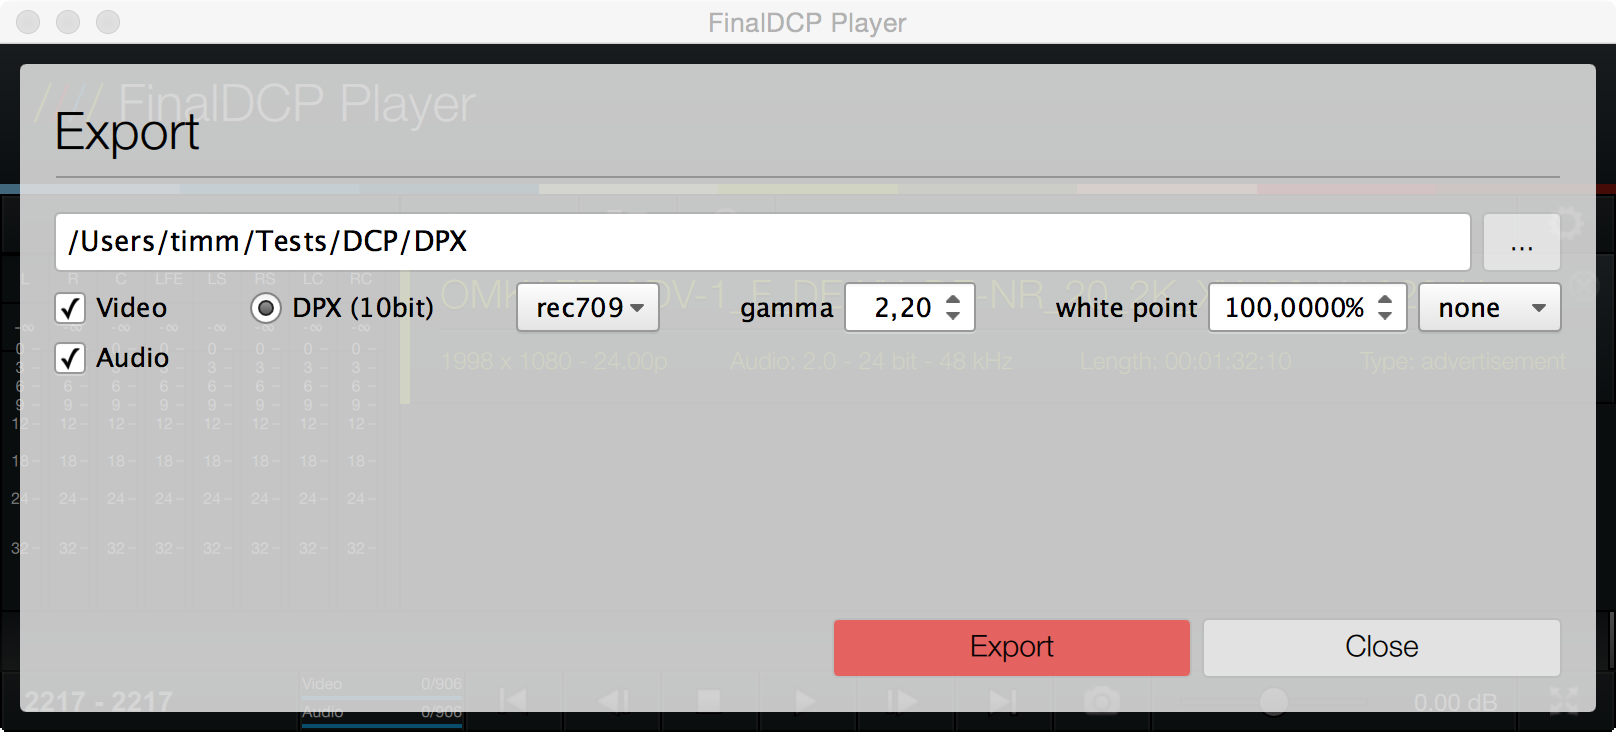 FinalDCP Player Export